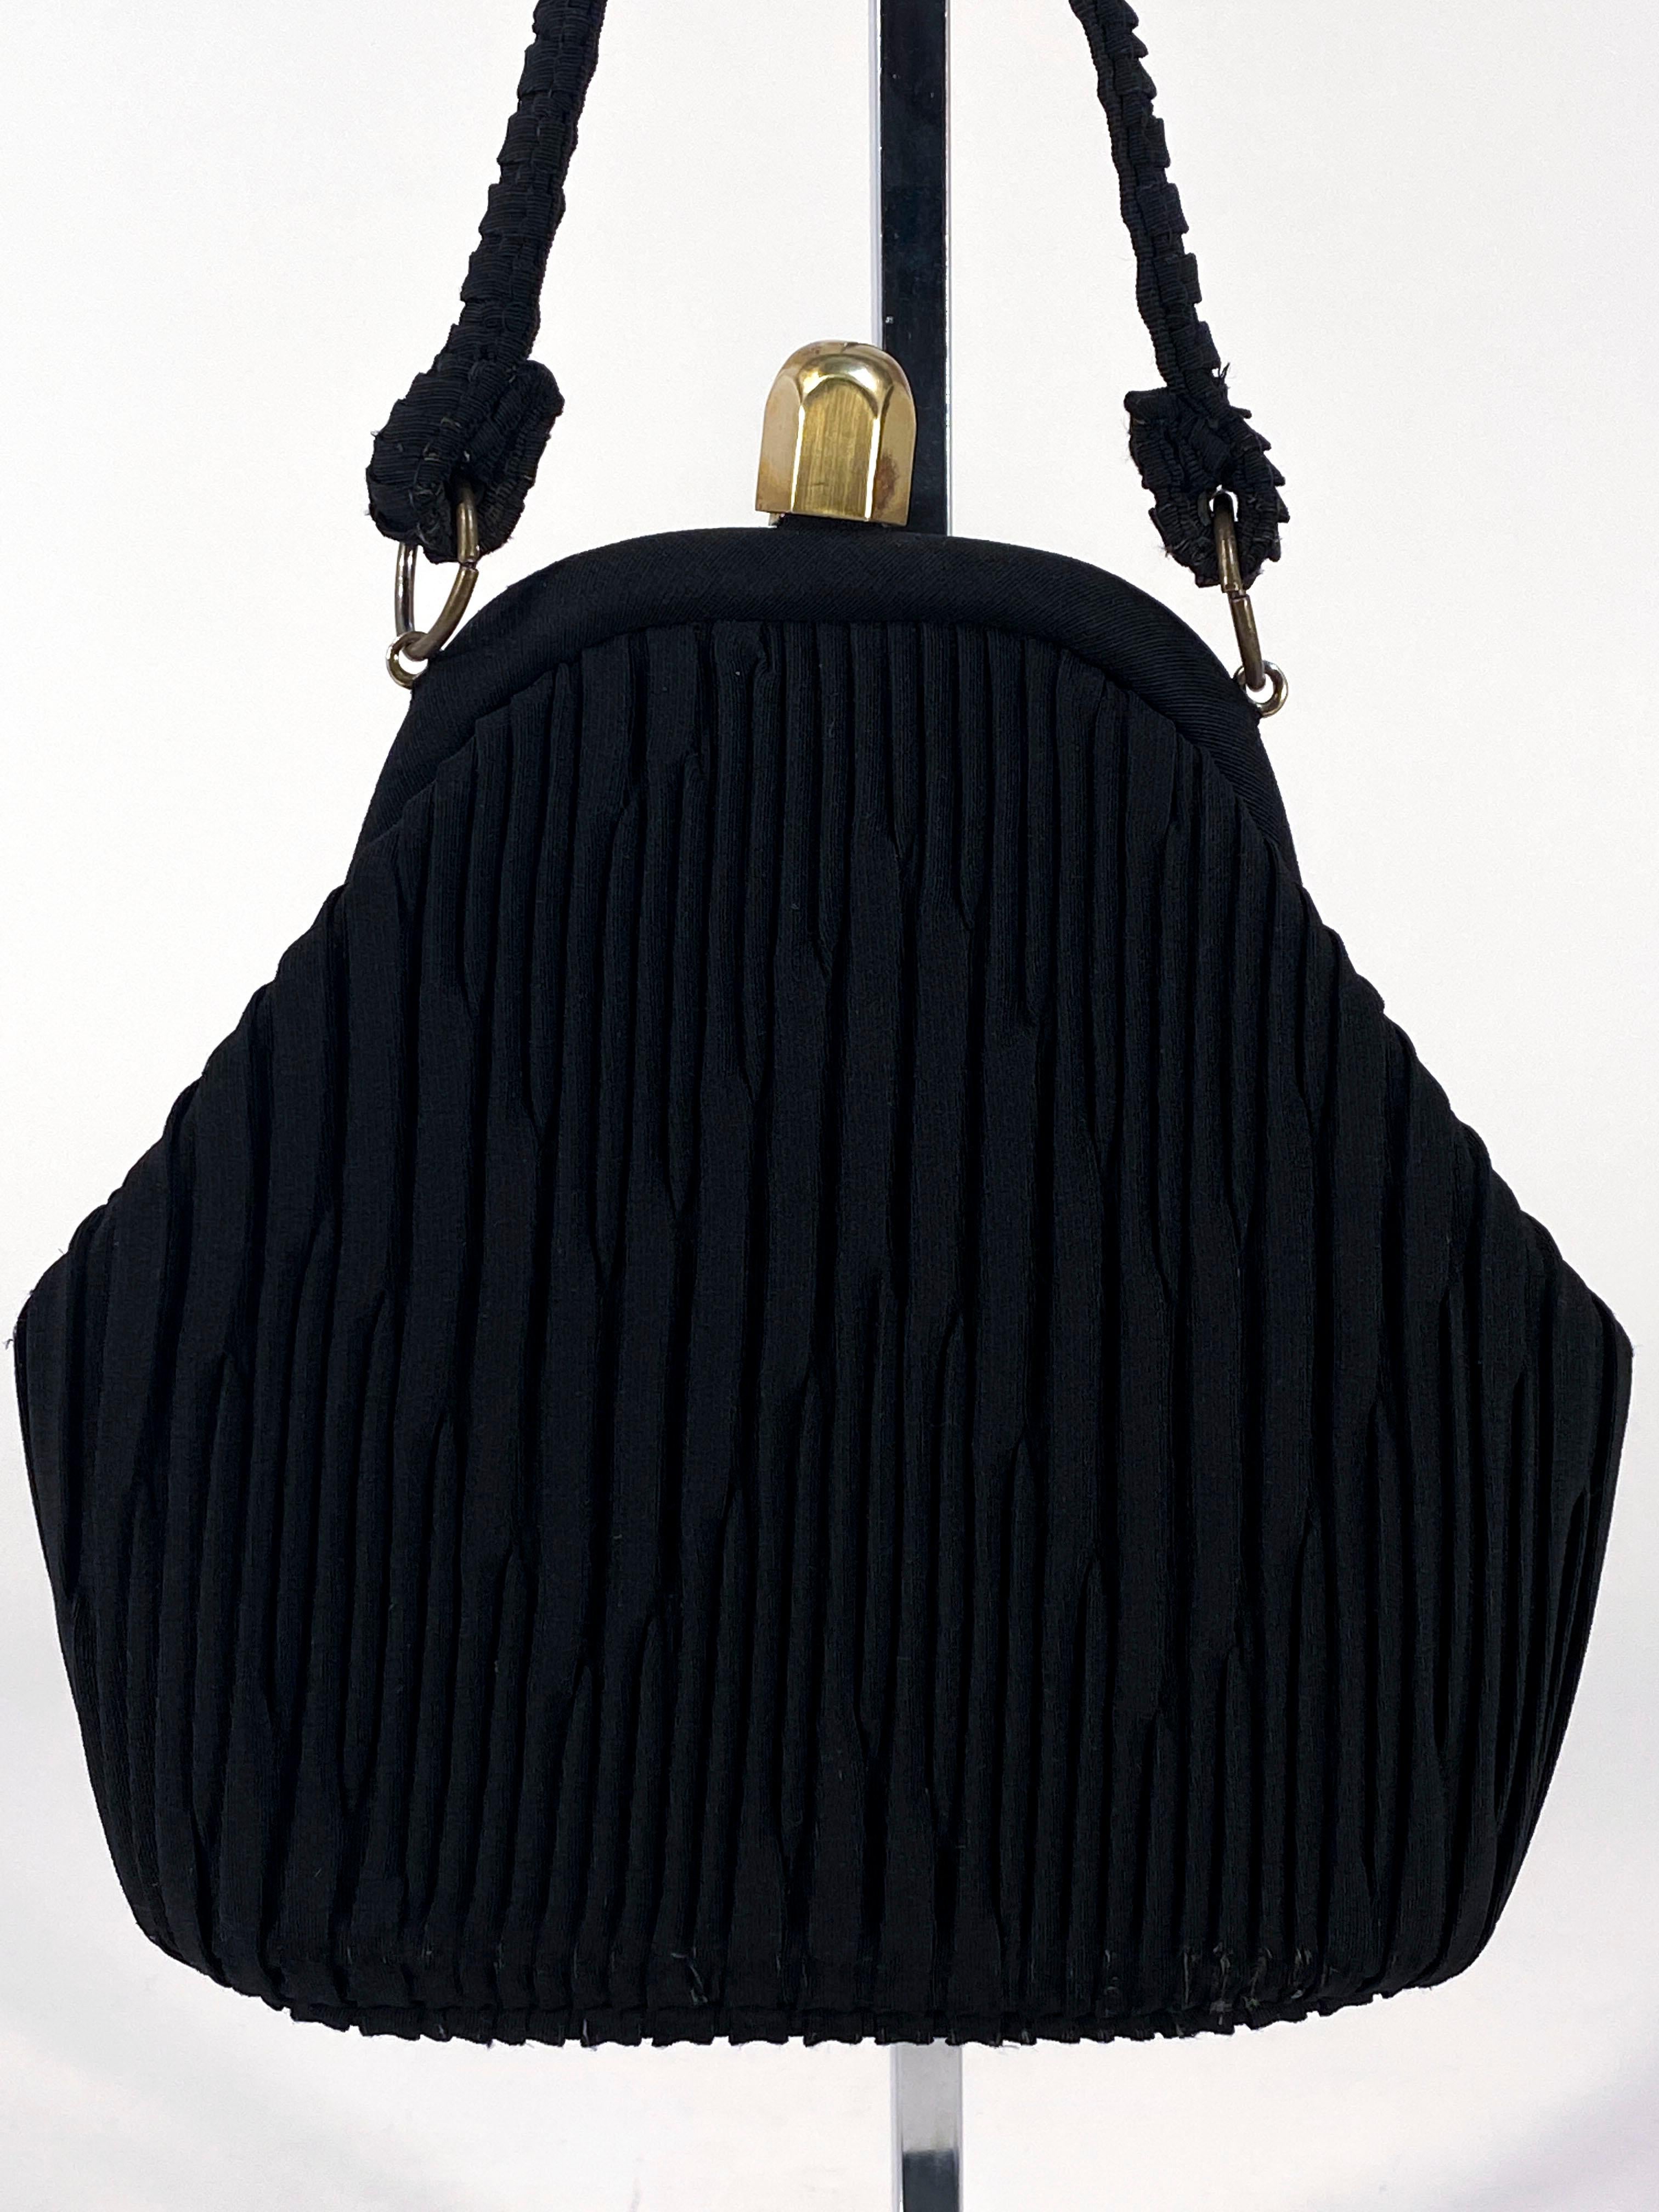 Sac à main Art déco noir des années 1930 avec plis décoratifs complexes en zigzag sur les deux côtés du sac. La poignée a des plis assortis et le cadre/fermeture intérieur est en laiton. L'intérieur est doublé d'un rose doux et comporte un